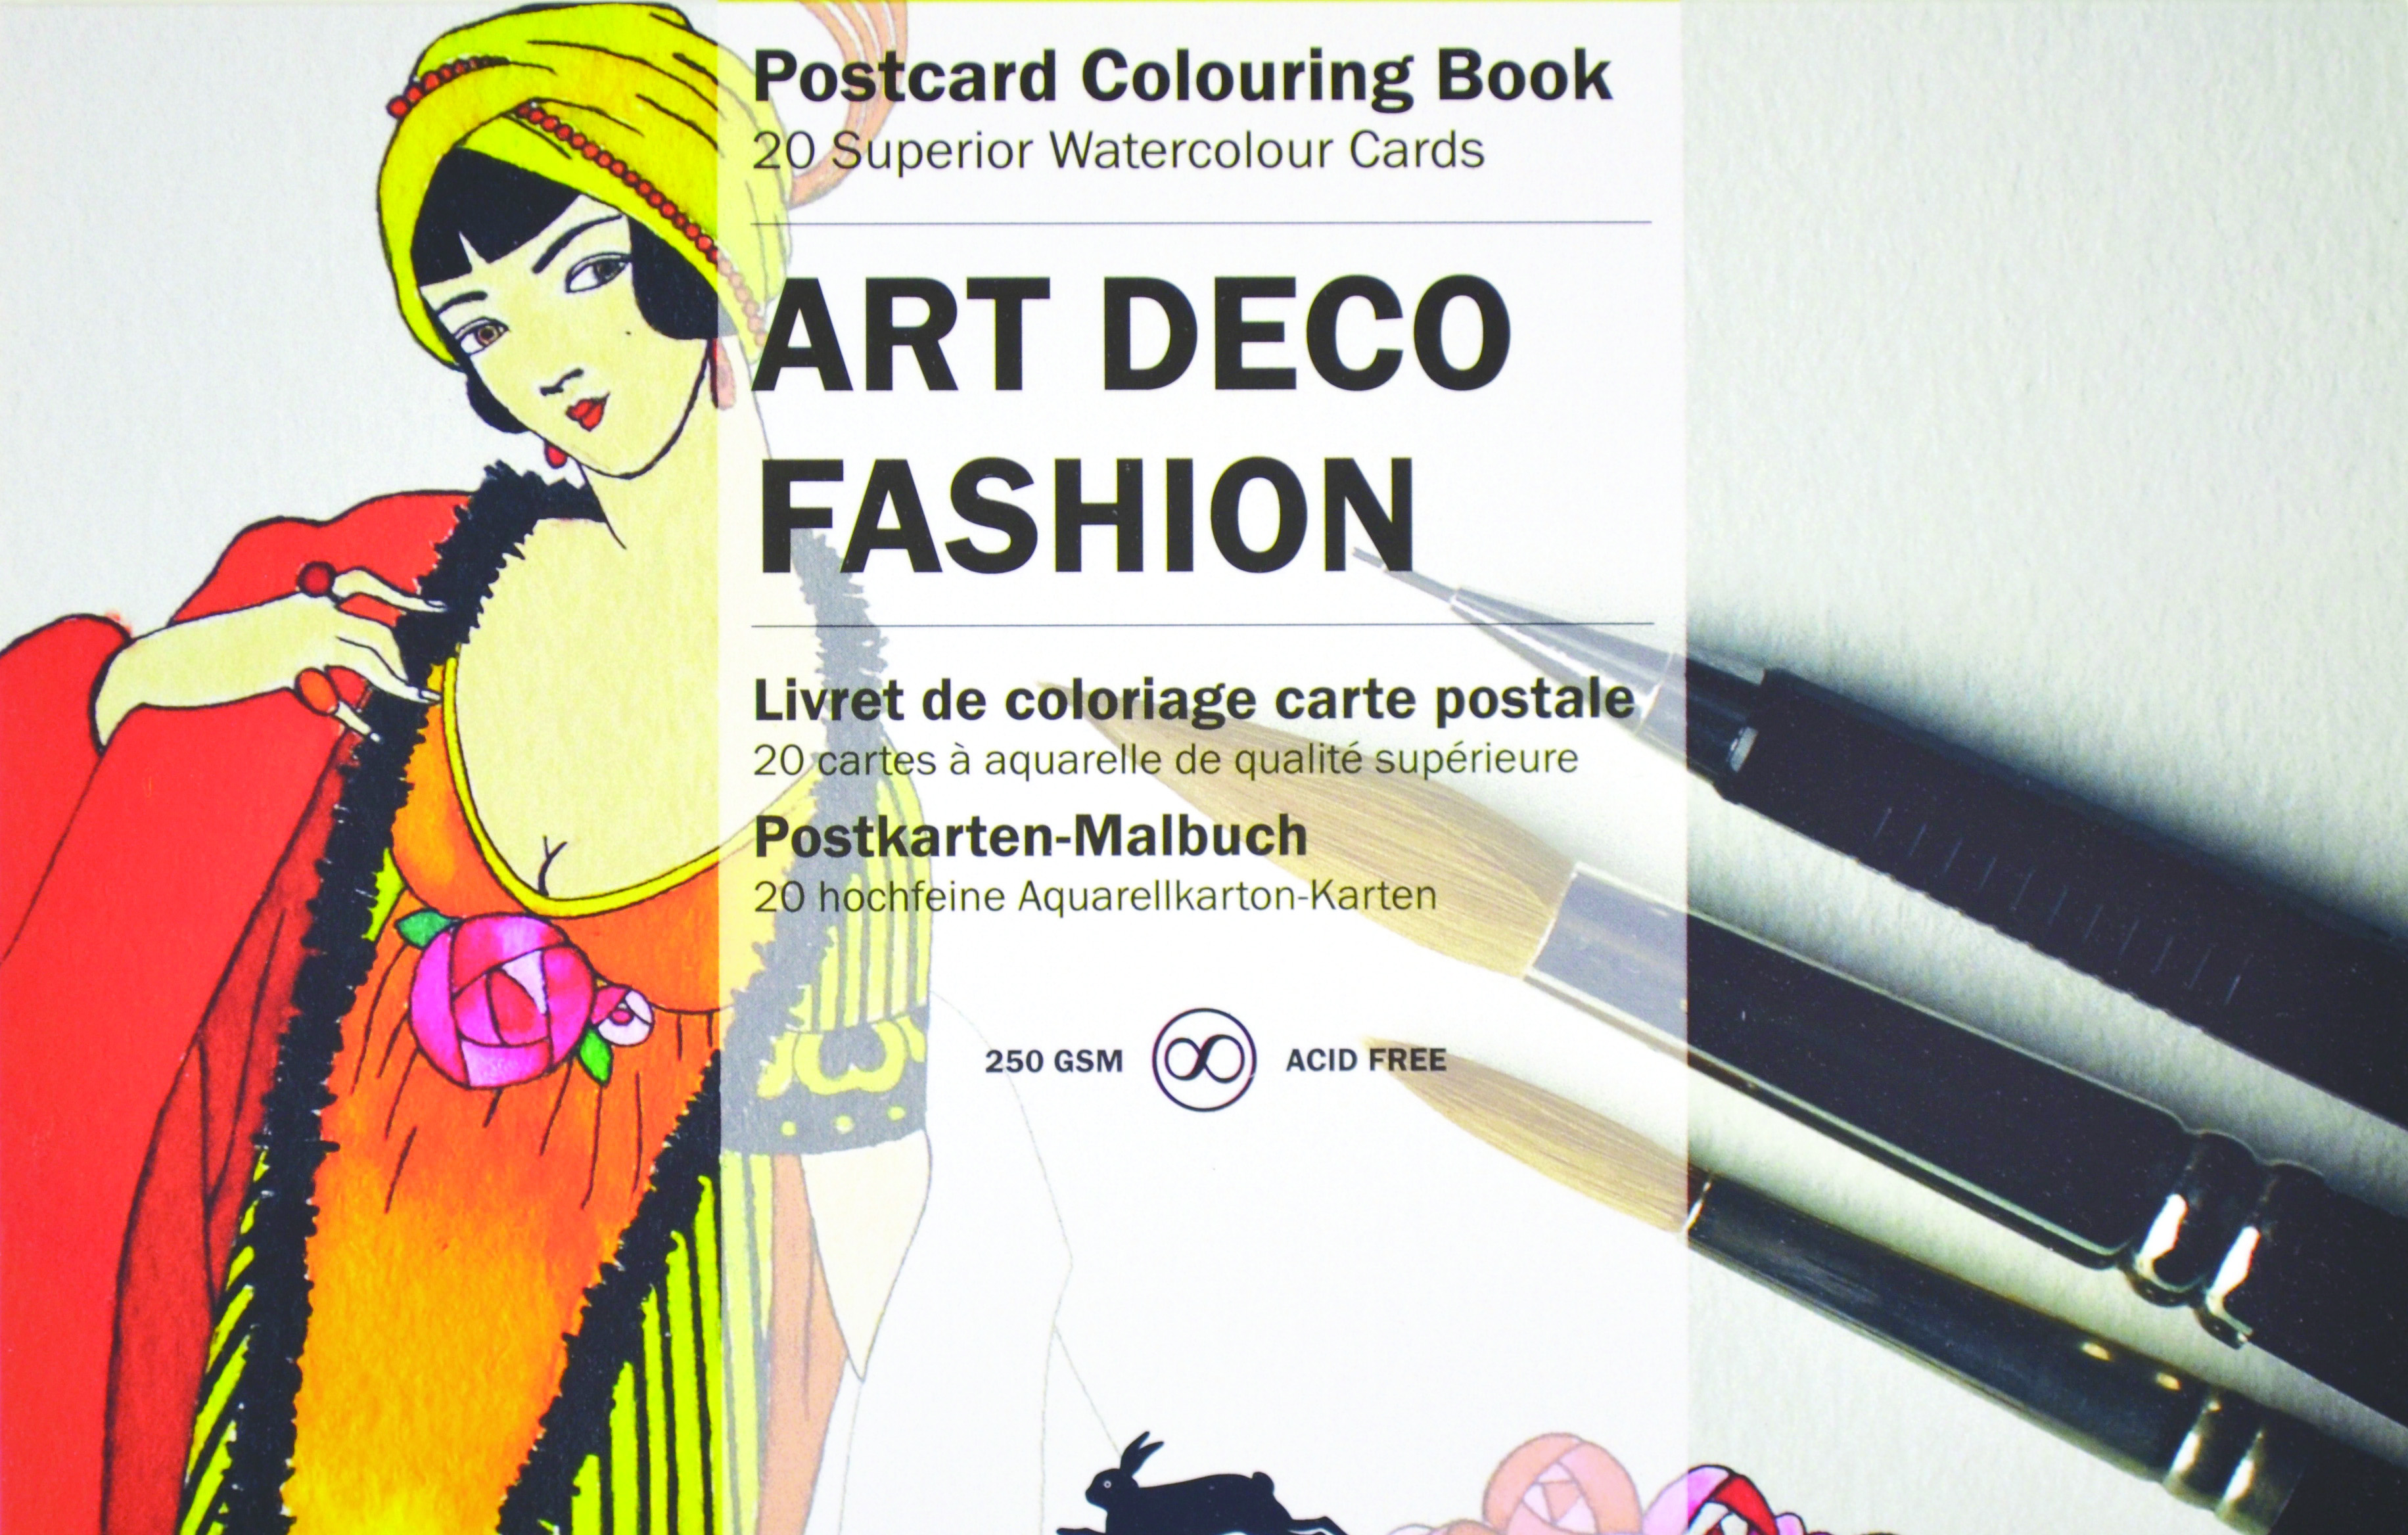 ART DECO FASHION: PEPIN POSTCARD COLOURING BOOK